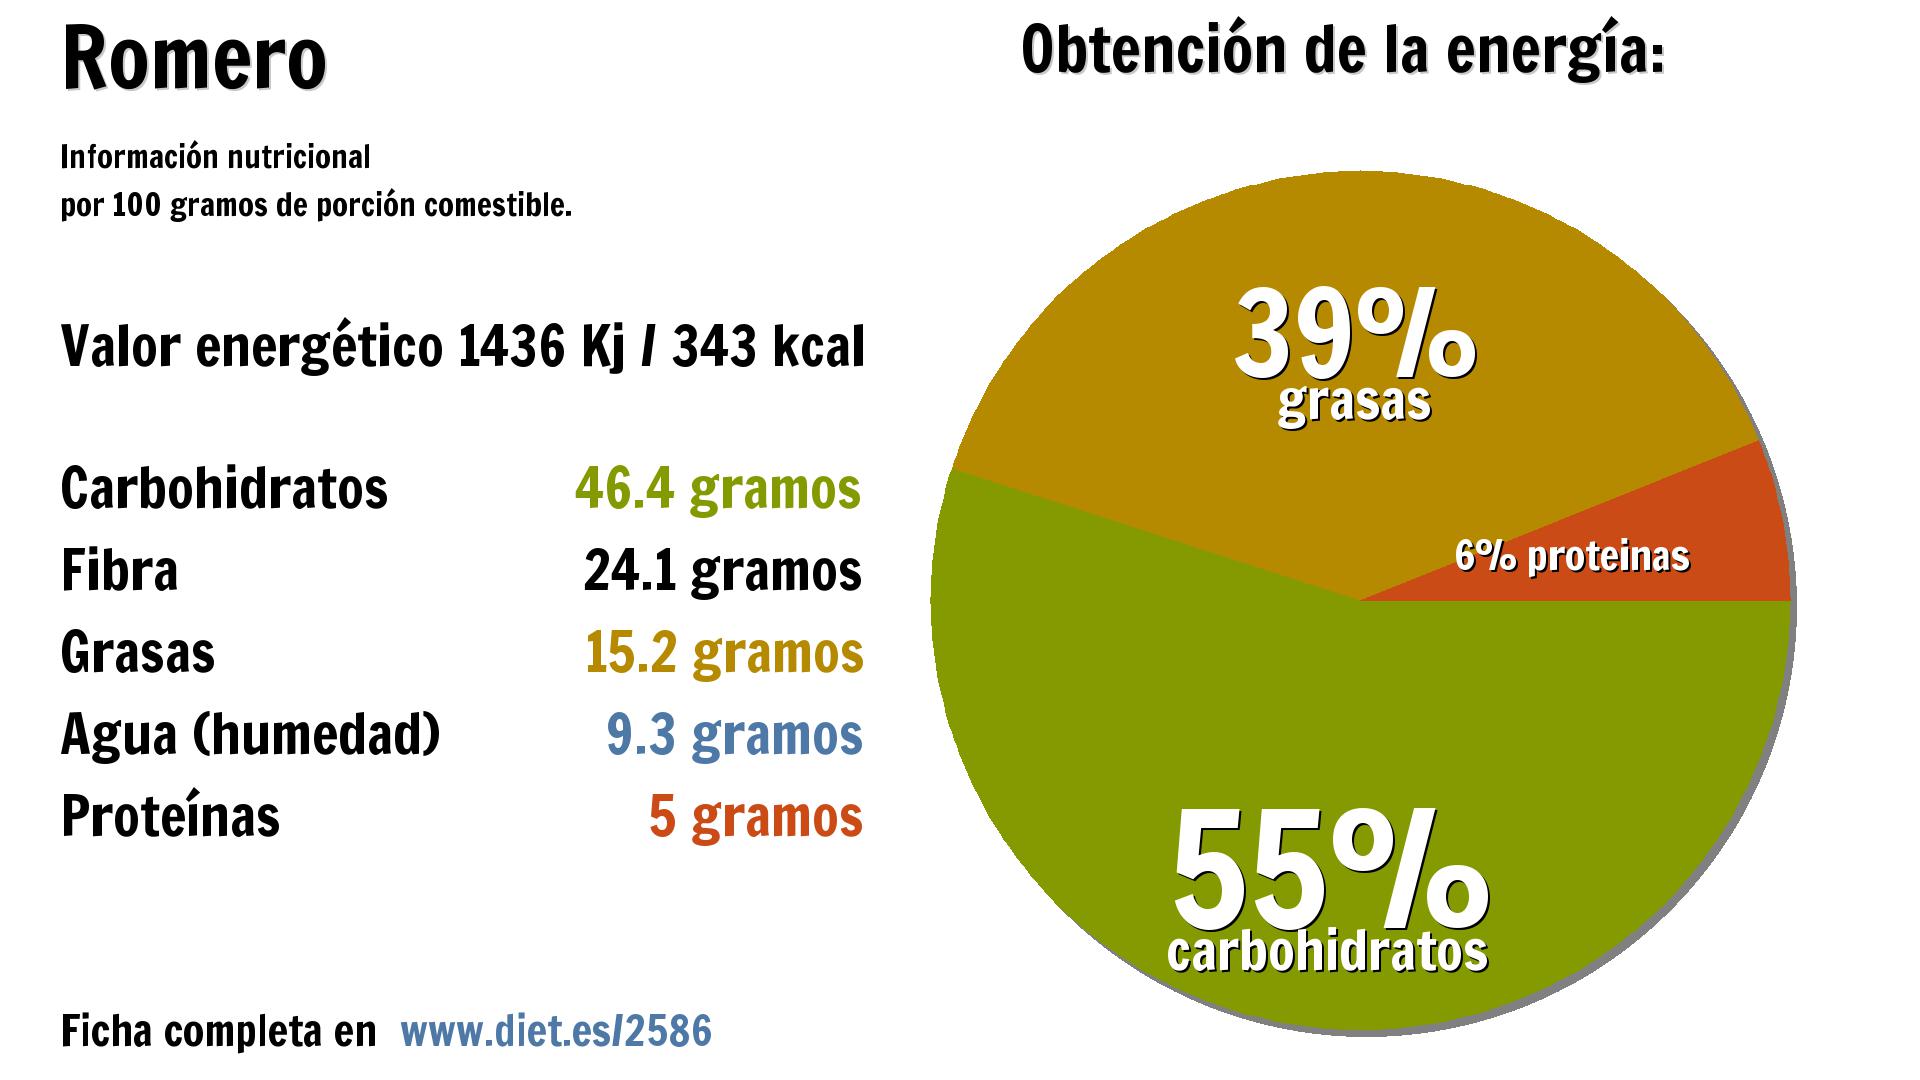 Romero: energía 1436 Kj, carbohidratos 46 g., fibra 24 g., grasas 15 g., agua 9 g. y proteínas 5 g.